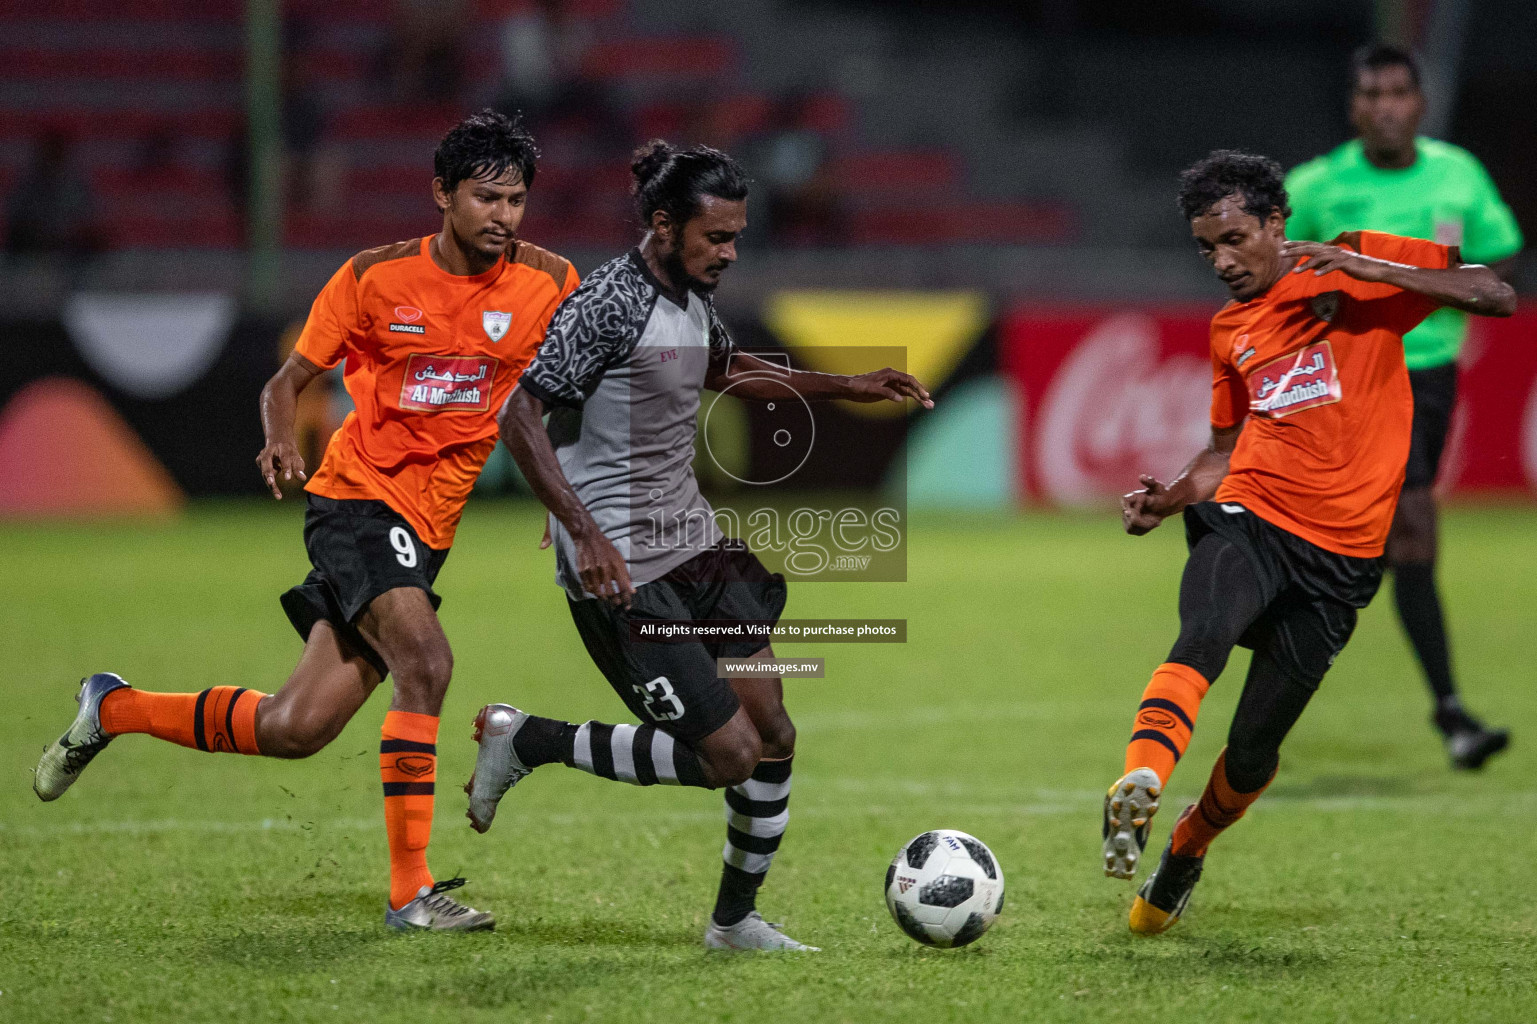 Club Eagles vs Club Green Streets in Dhiraagu Dhivehi Premier League 2019 held in Male', Maldives on 24th June 2019 Photos: Shuadh Abdul Sattar/images.mv